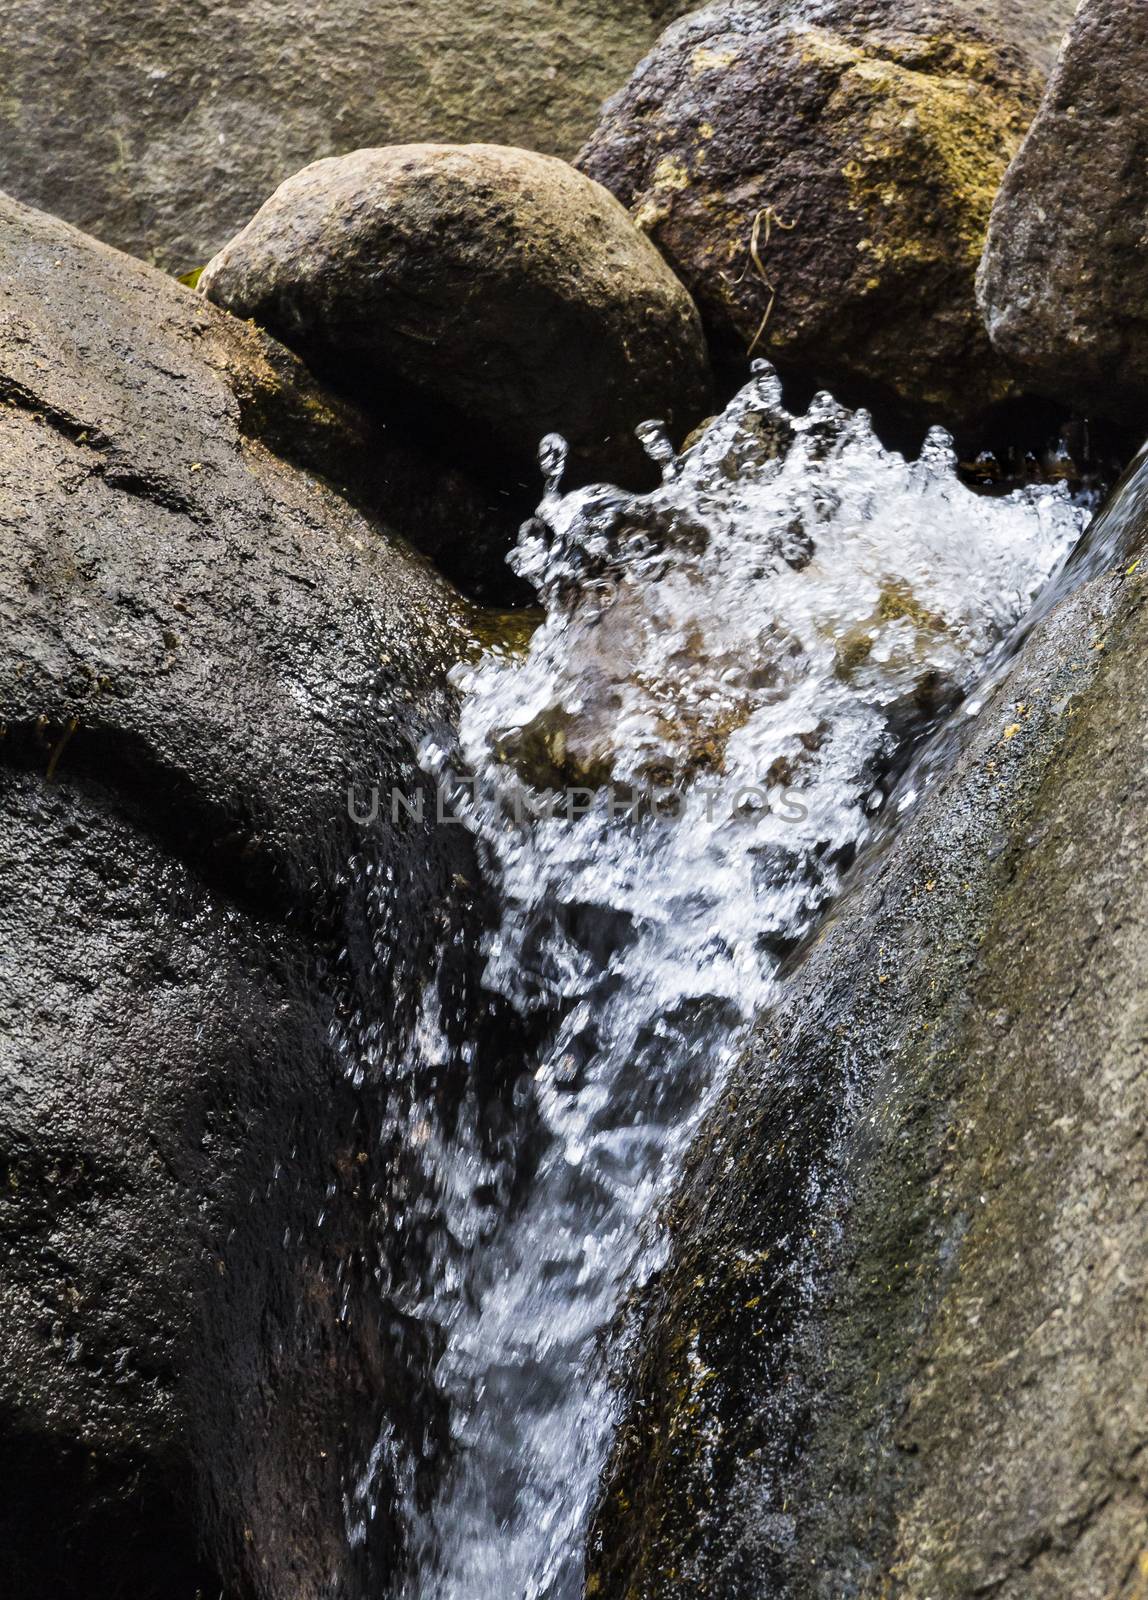 Water flowing down rocks